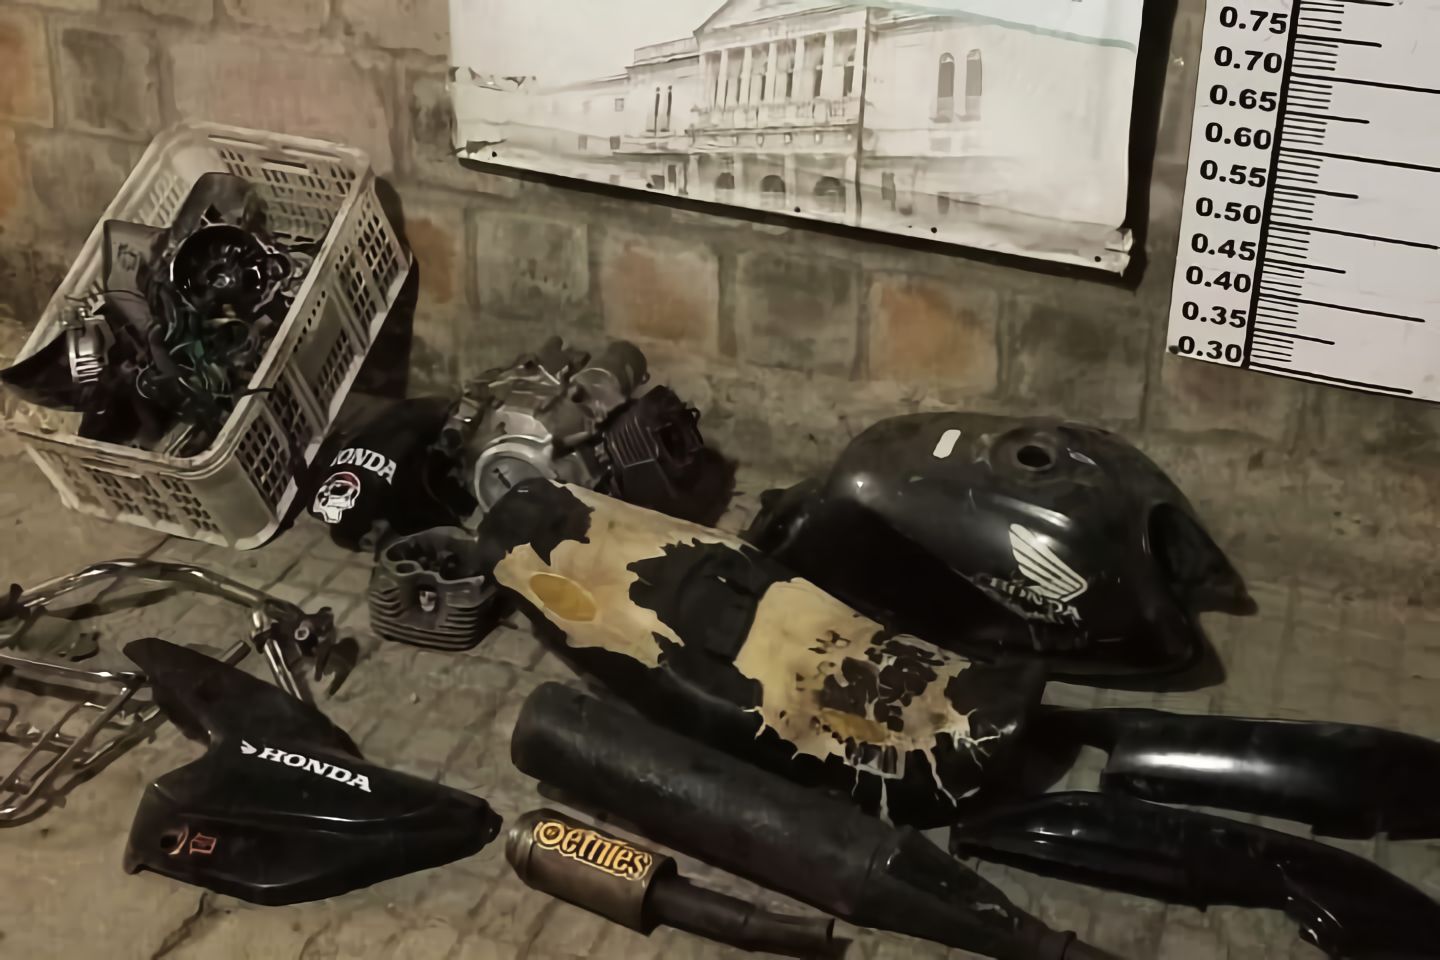 Las partes de motos secuestradas durante el allanamiento.